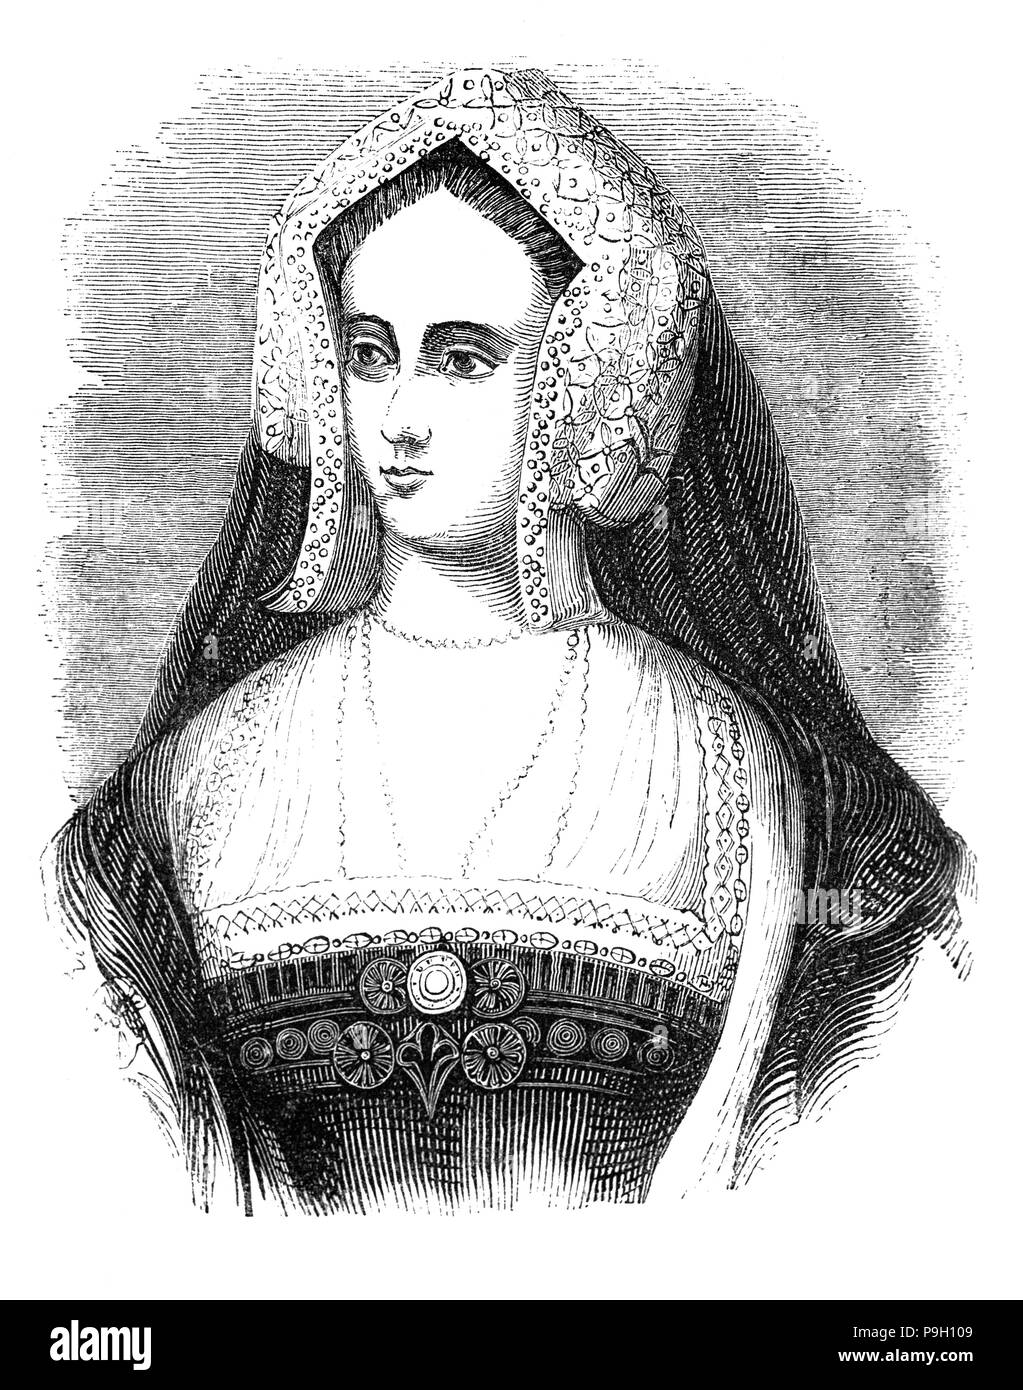 Un ritratto di Caterina d'Aragona ( 1485 - 1536), regina d'Inghilterra dal giugno 1509 fino al maggio 1533 come la prima moglie di re Enrico VIII. Per un periodo di sei mesi nel 1513, ha servito come reggente di Inghilterra mentre Enrico VIII era in Francia. Dal 1525, Henry VIII è stato infatuated con Anne Boleyn e insoddisfatto che Caterina aveva prodotto senza figli superstiti, cercava di avere il loro matrimonio annullato, messa in moto una catena di eventi che ha portato all'Inghilterra del scisma con la Chiesa cattolica. Nel 1533 il loro matrimonio è stata pertanto dichiarata invalida e Henry sposò Anna. Foto Stock